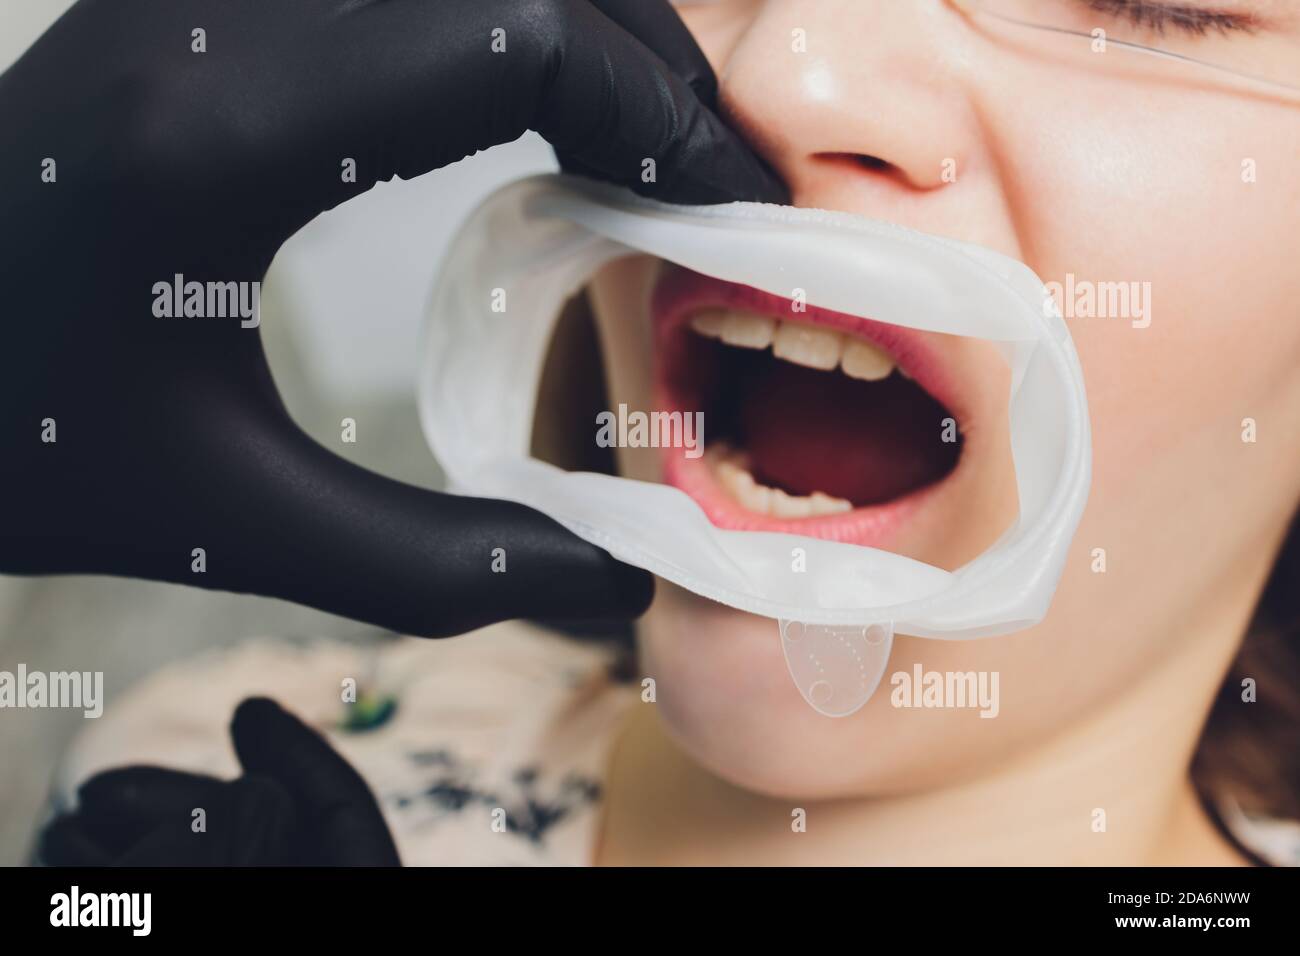 Foto in primo piano di una diga monouso in gomma per denti utilizzata per mantenere i tessuti molli della bocca al sicuro dagli utensili dentali. Foto Stock